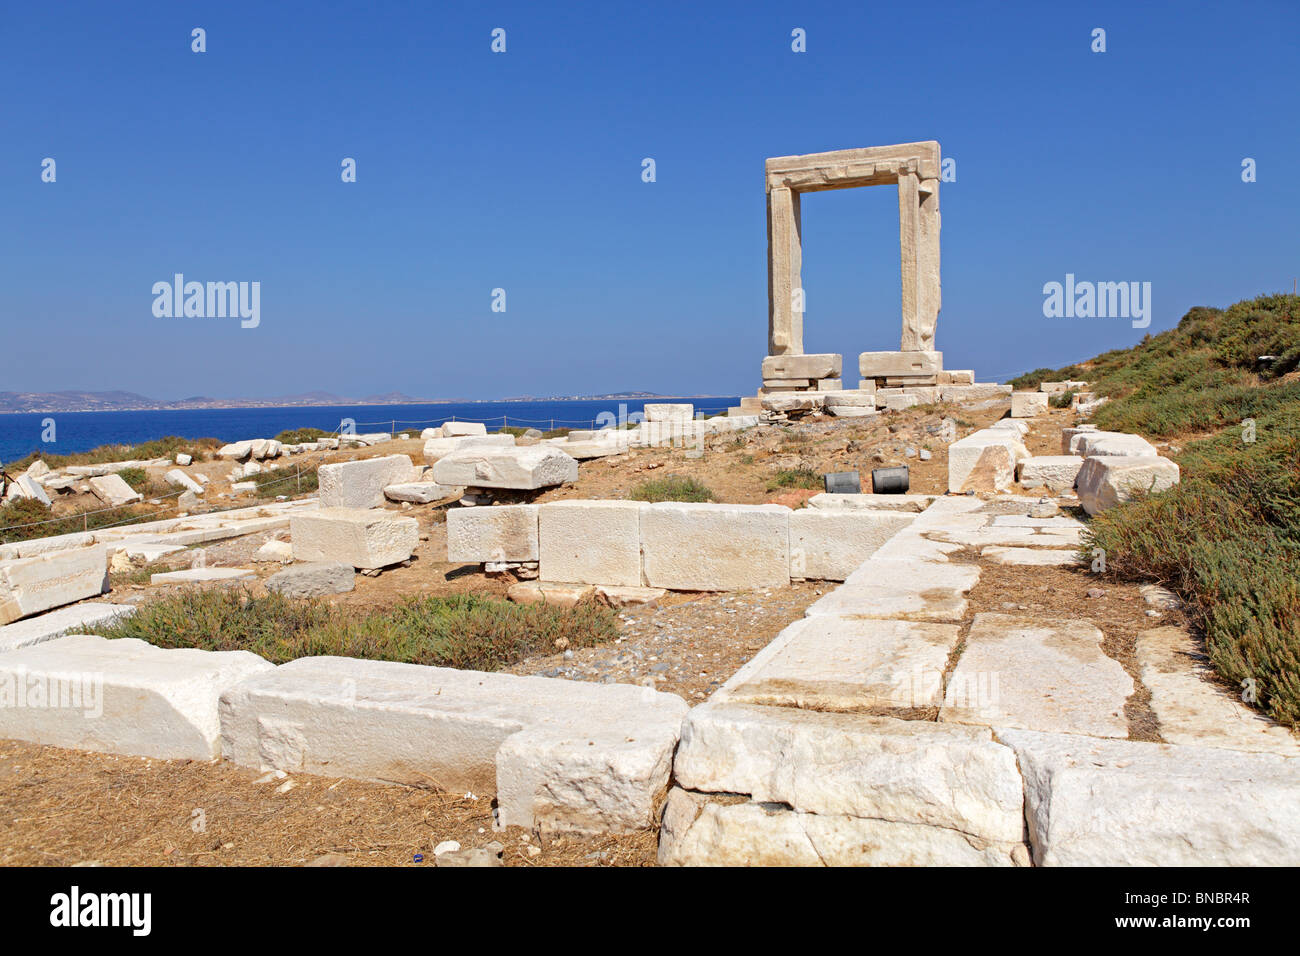 Porte du temple d'Apollon, Portara, la ville de Naxos, l'île de Naxos, Cyclades, Mer Égée, Grèce Banque D'Images